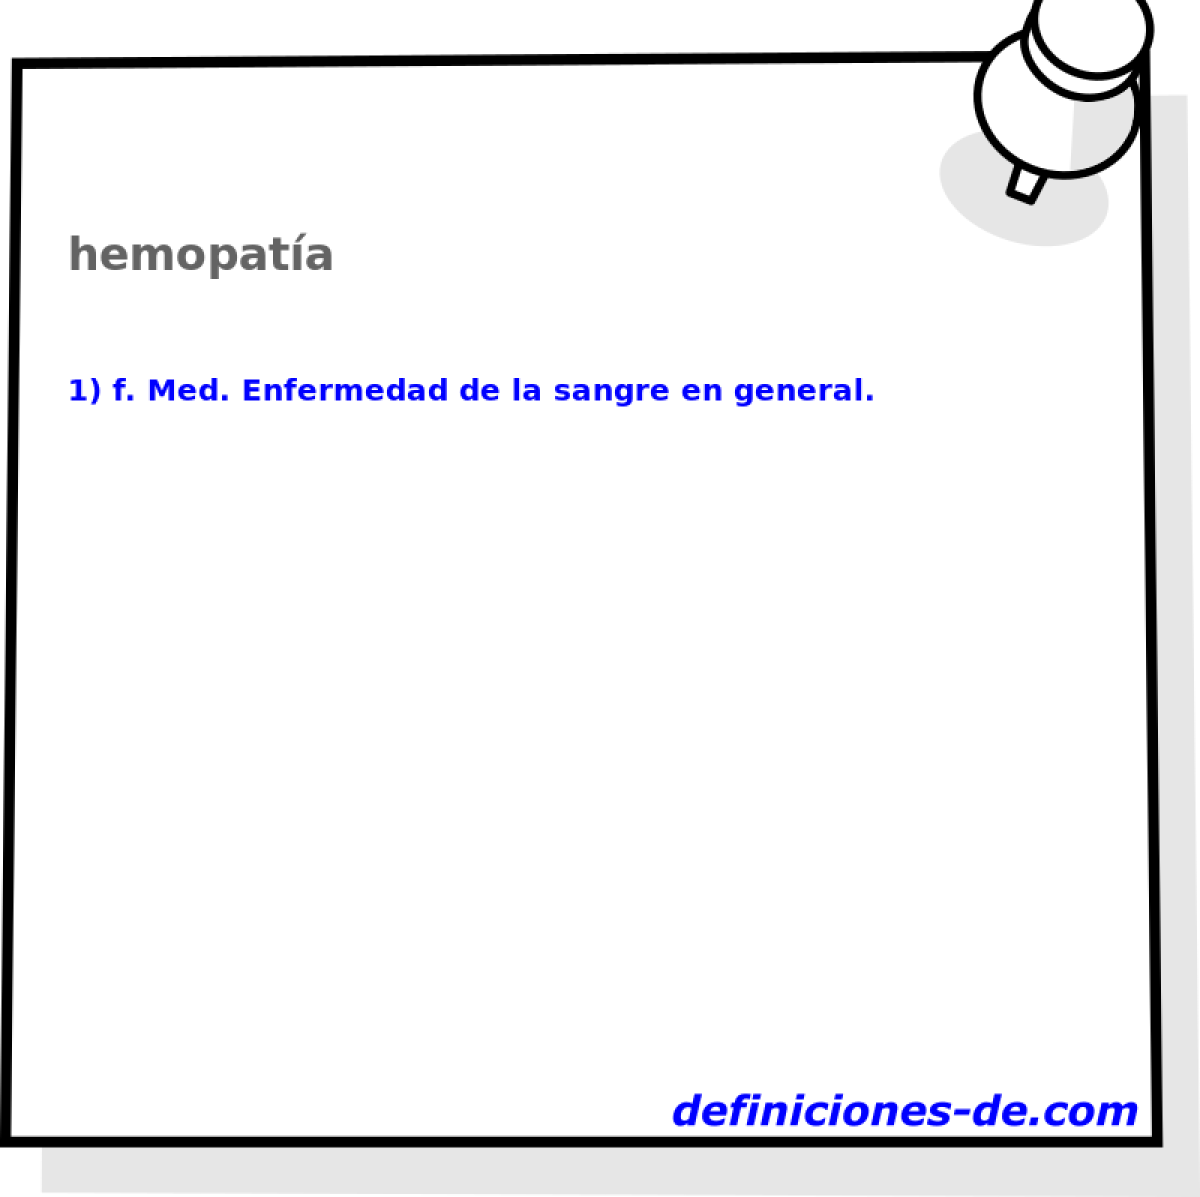 hemopata 